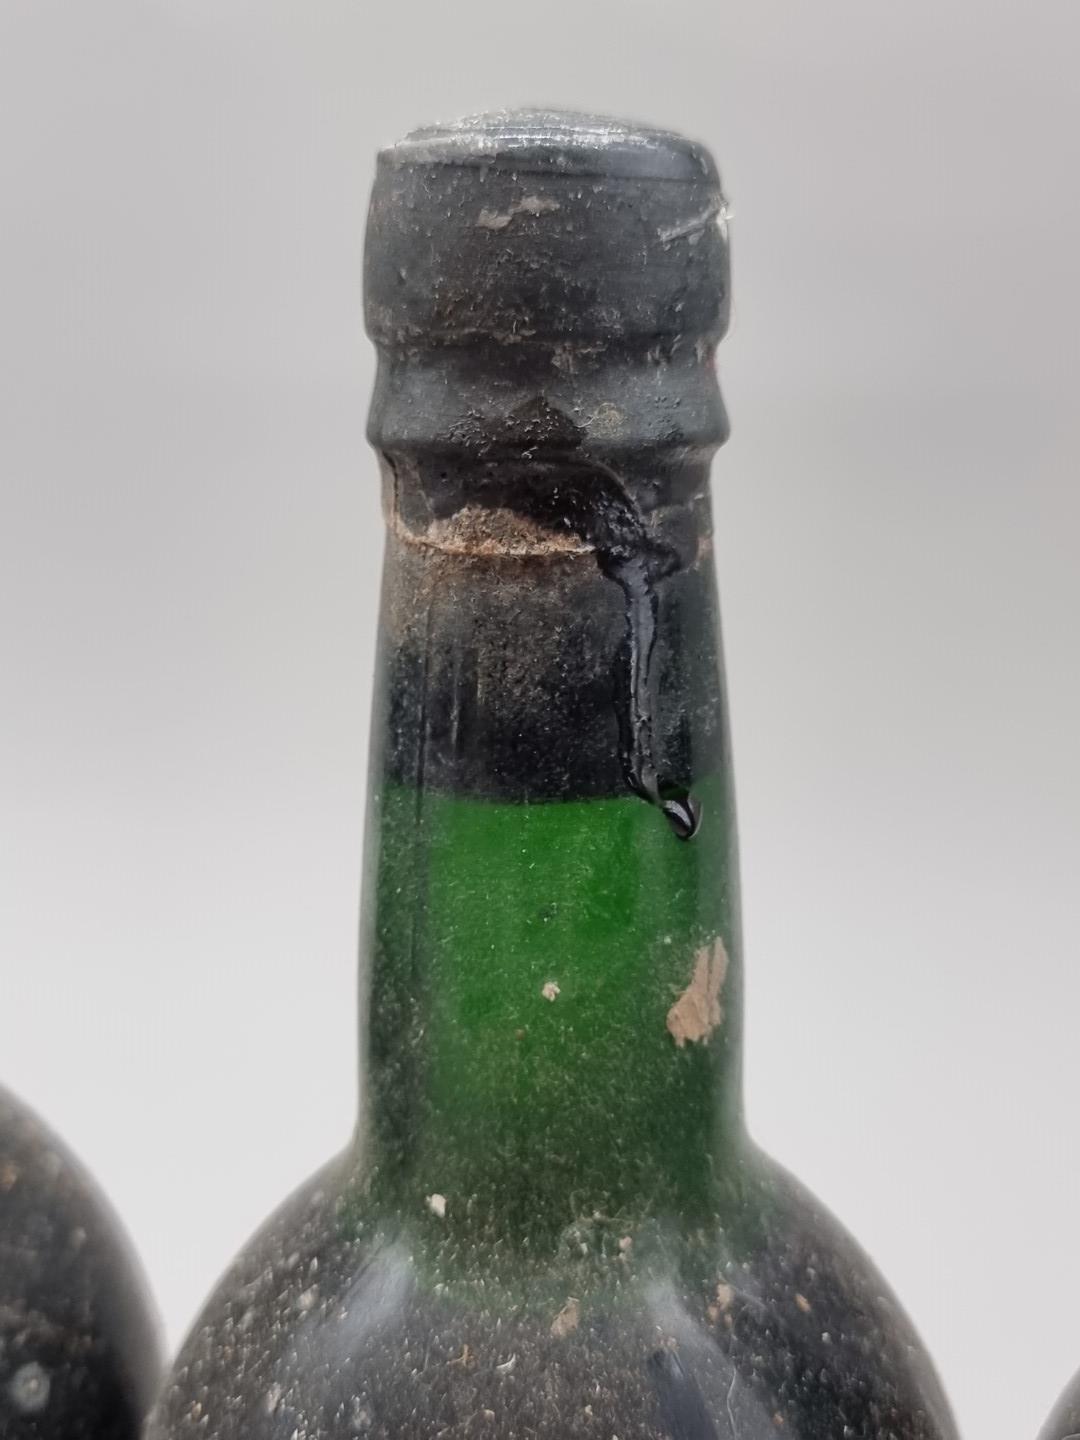 Six bottles of Taylor's 1966 Vintage Port, (no labels). (6) - Image 2 of 4